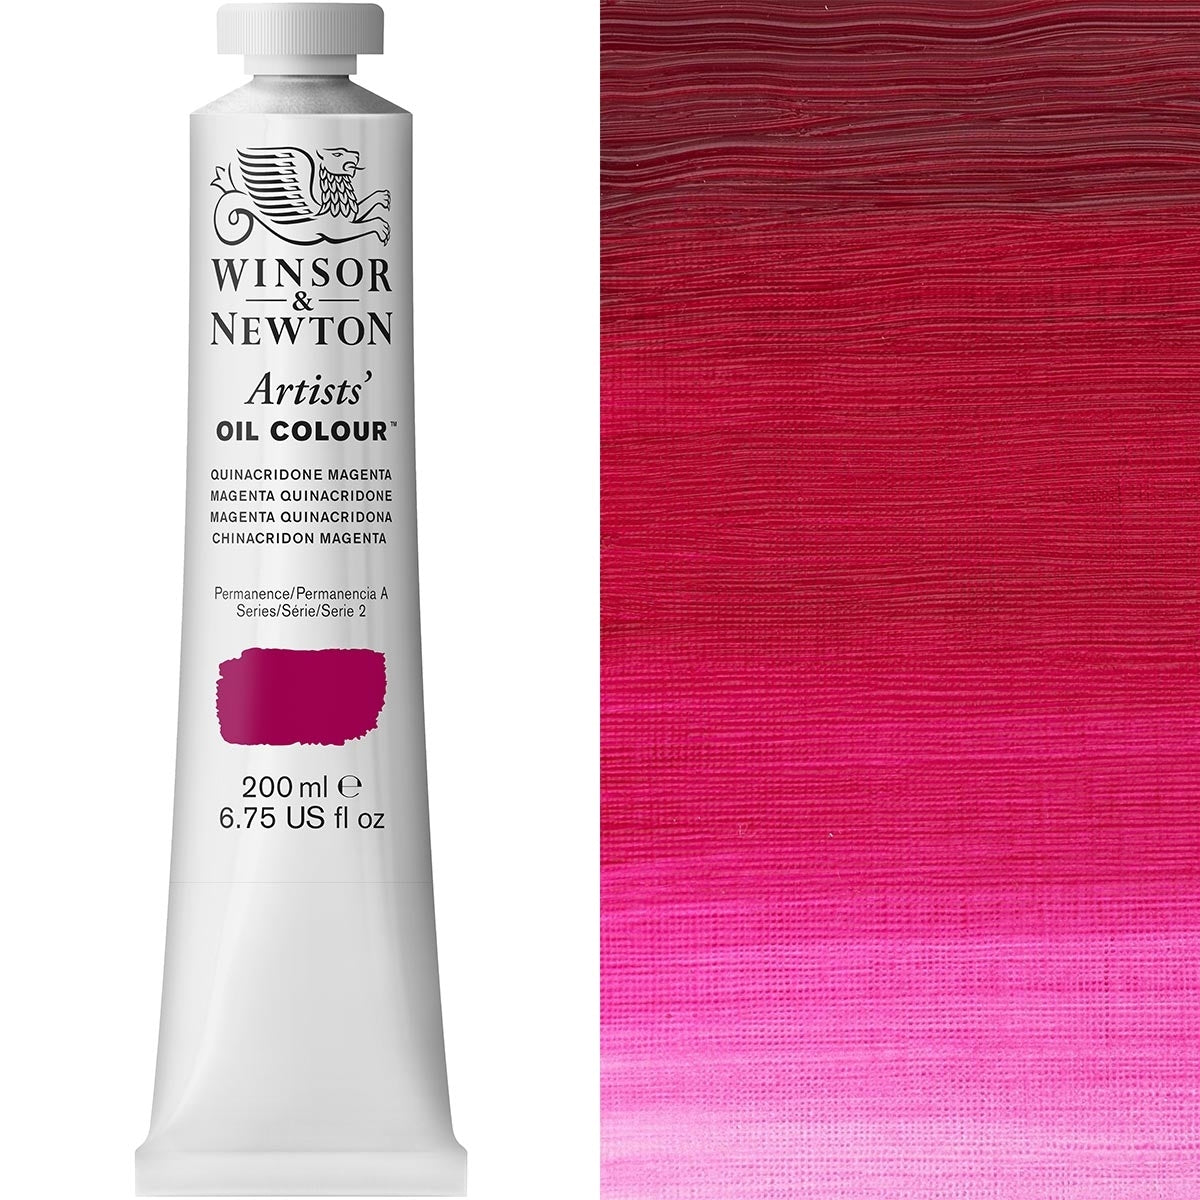 Winsor e Newton - Colore olio degli artisti - 200ml - Quincridone magenta